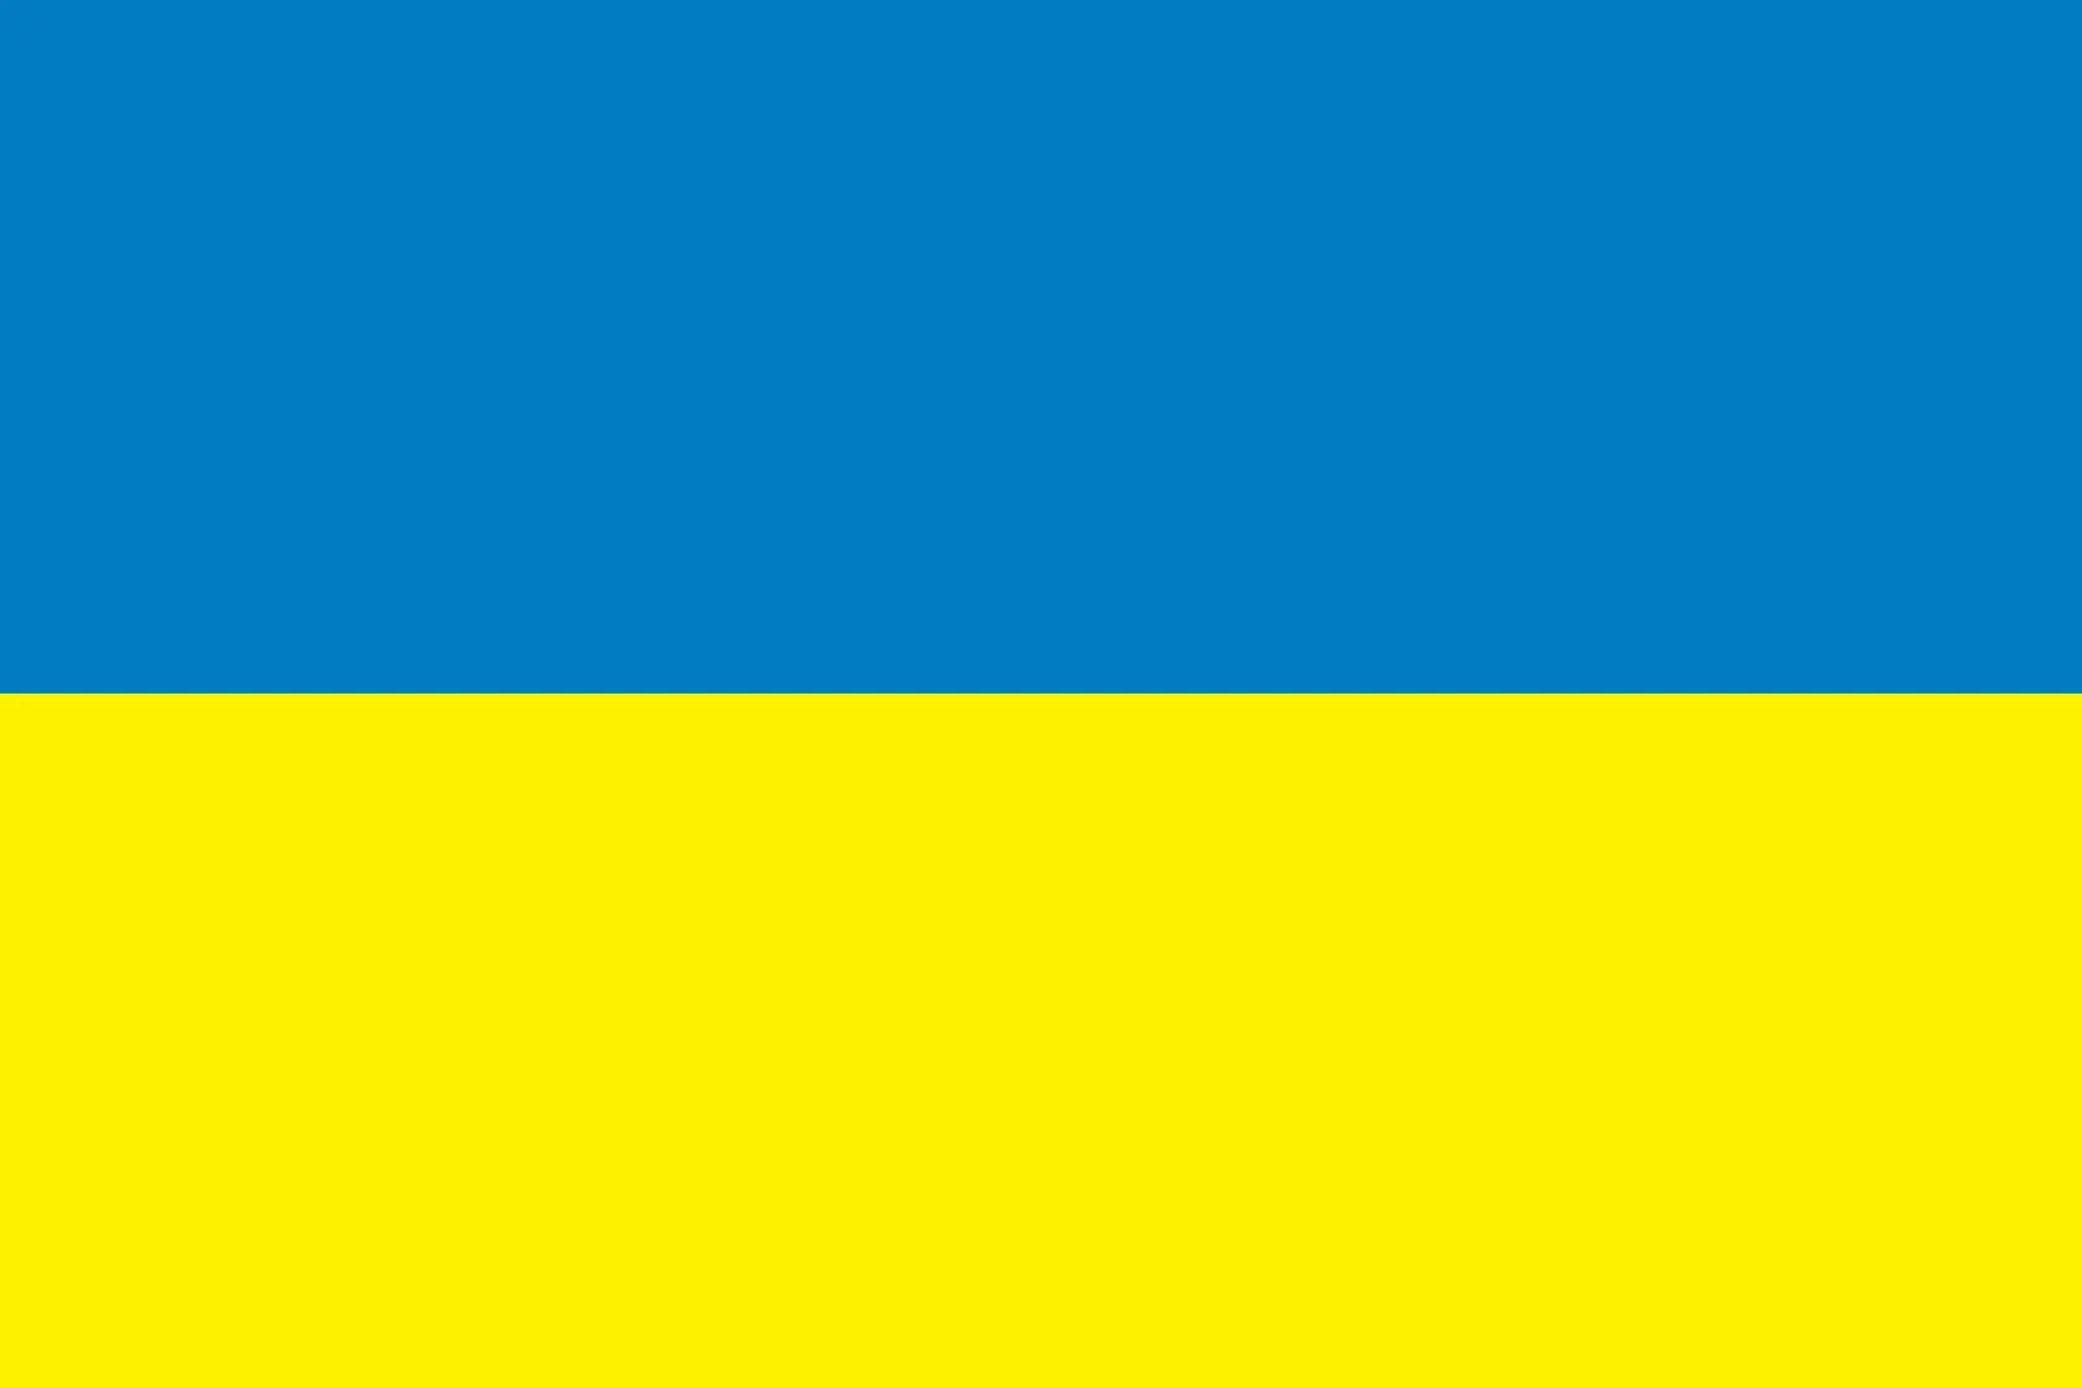 Glory To Ukraine!